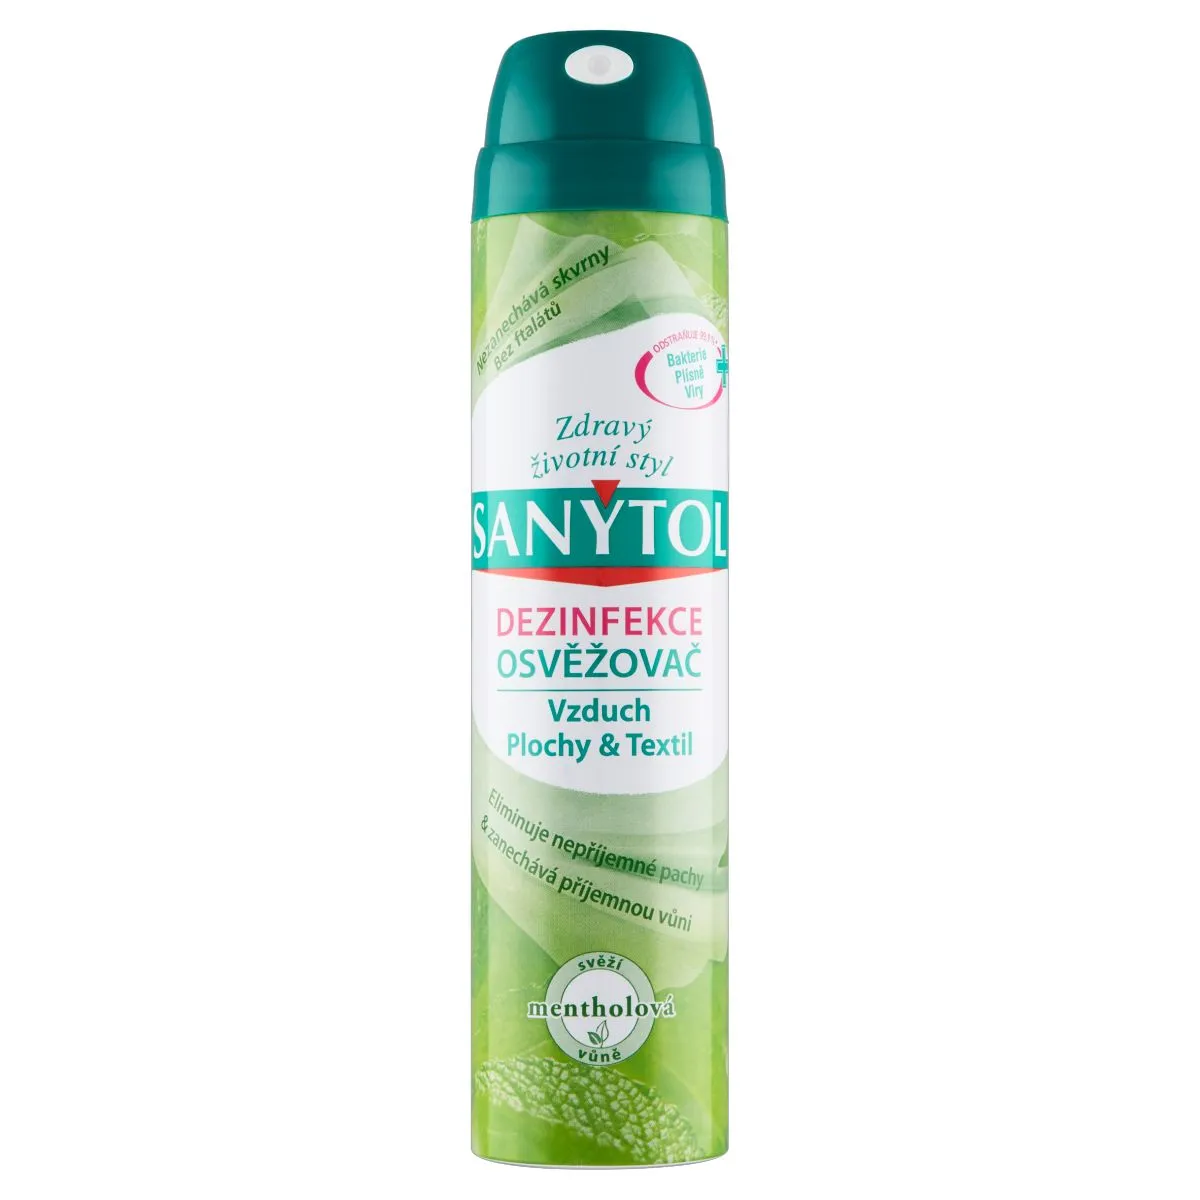 Sanytol Dezinfekce osvěžovač vzduchu, ploch a textilií mentolová vůně 300 ml